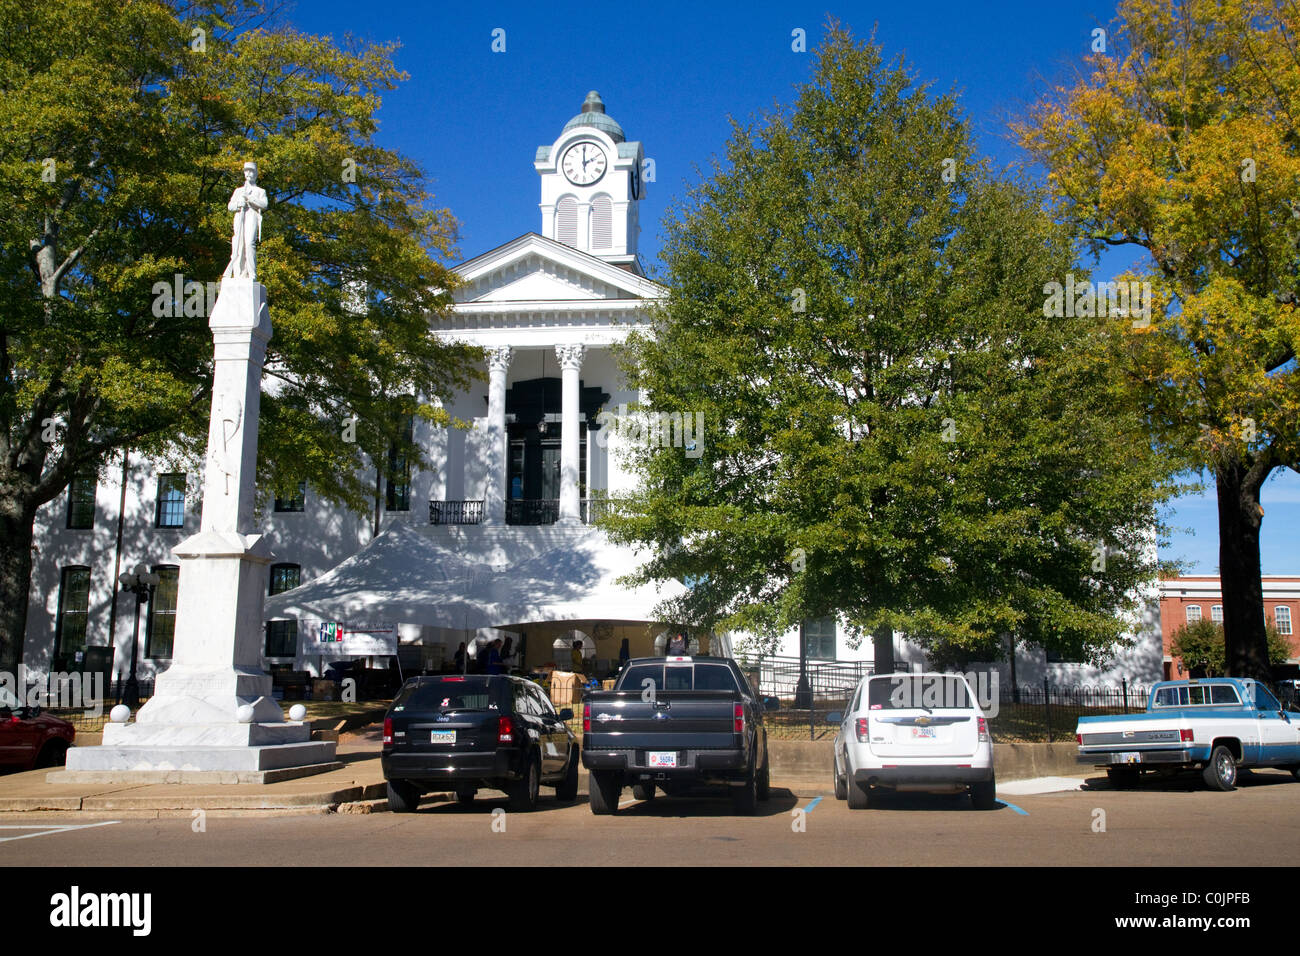 Le Lafayette County Courthouse situé dans 'Le Carré' d'Oxford, Mississippi, USA. Banque D'Images